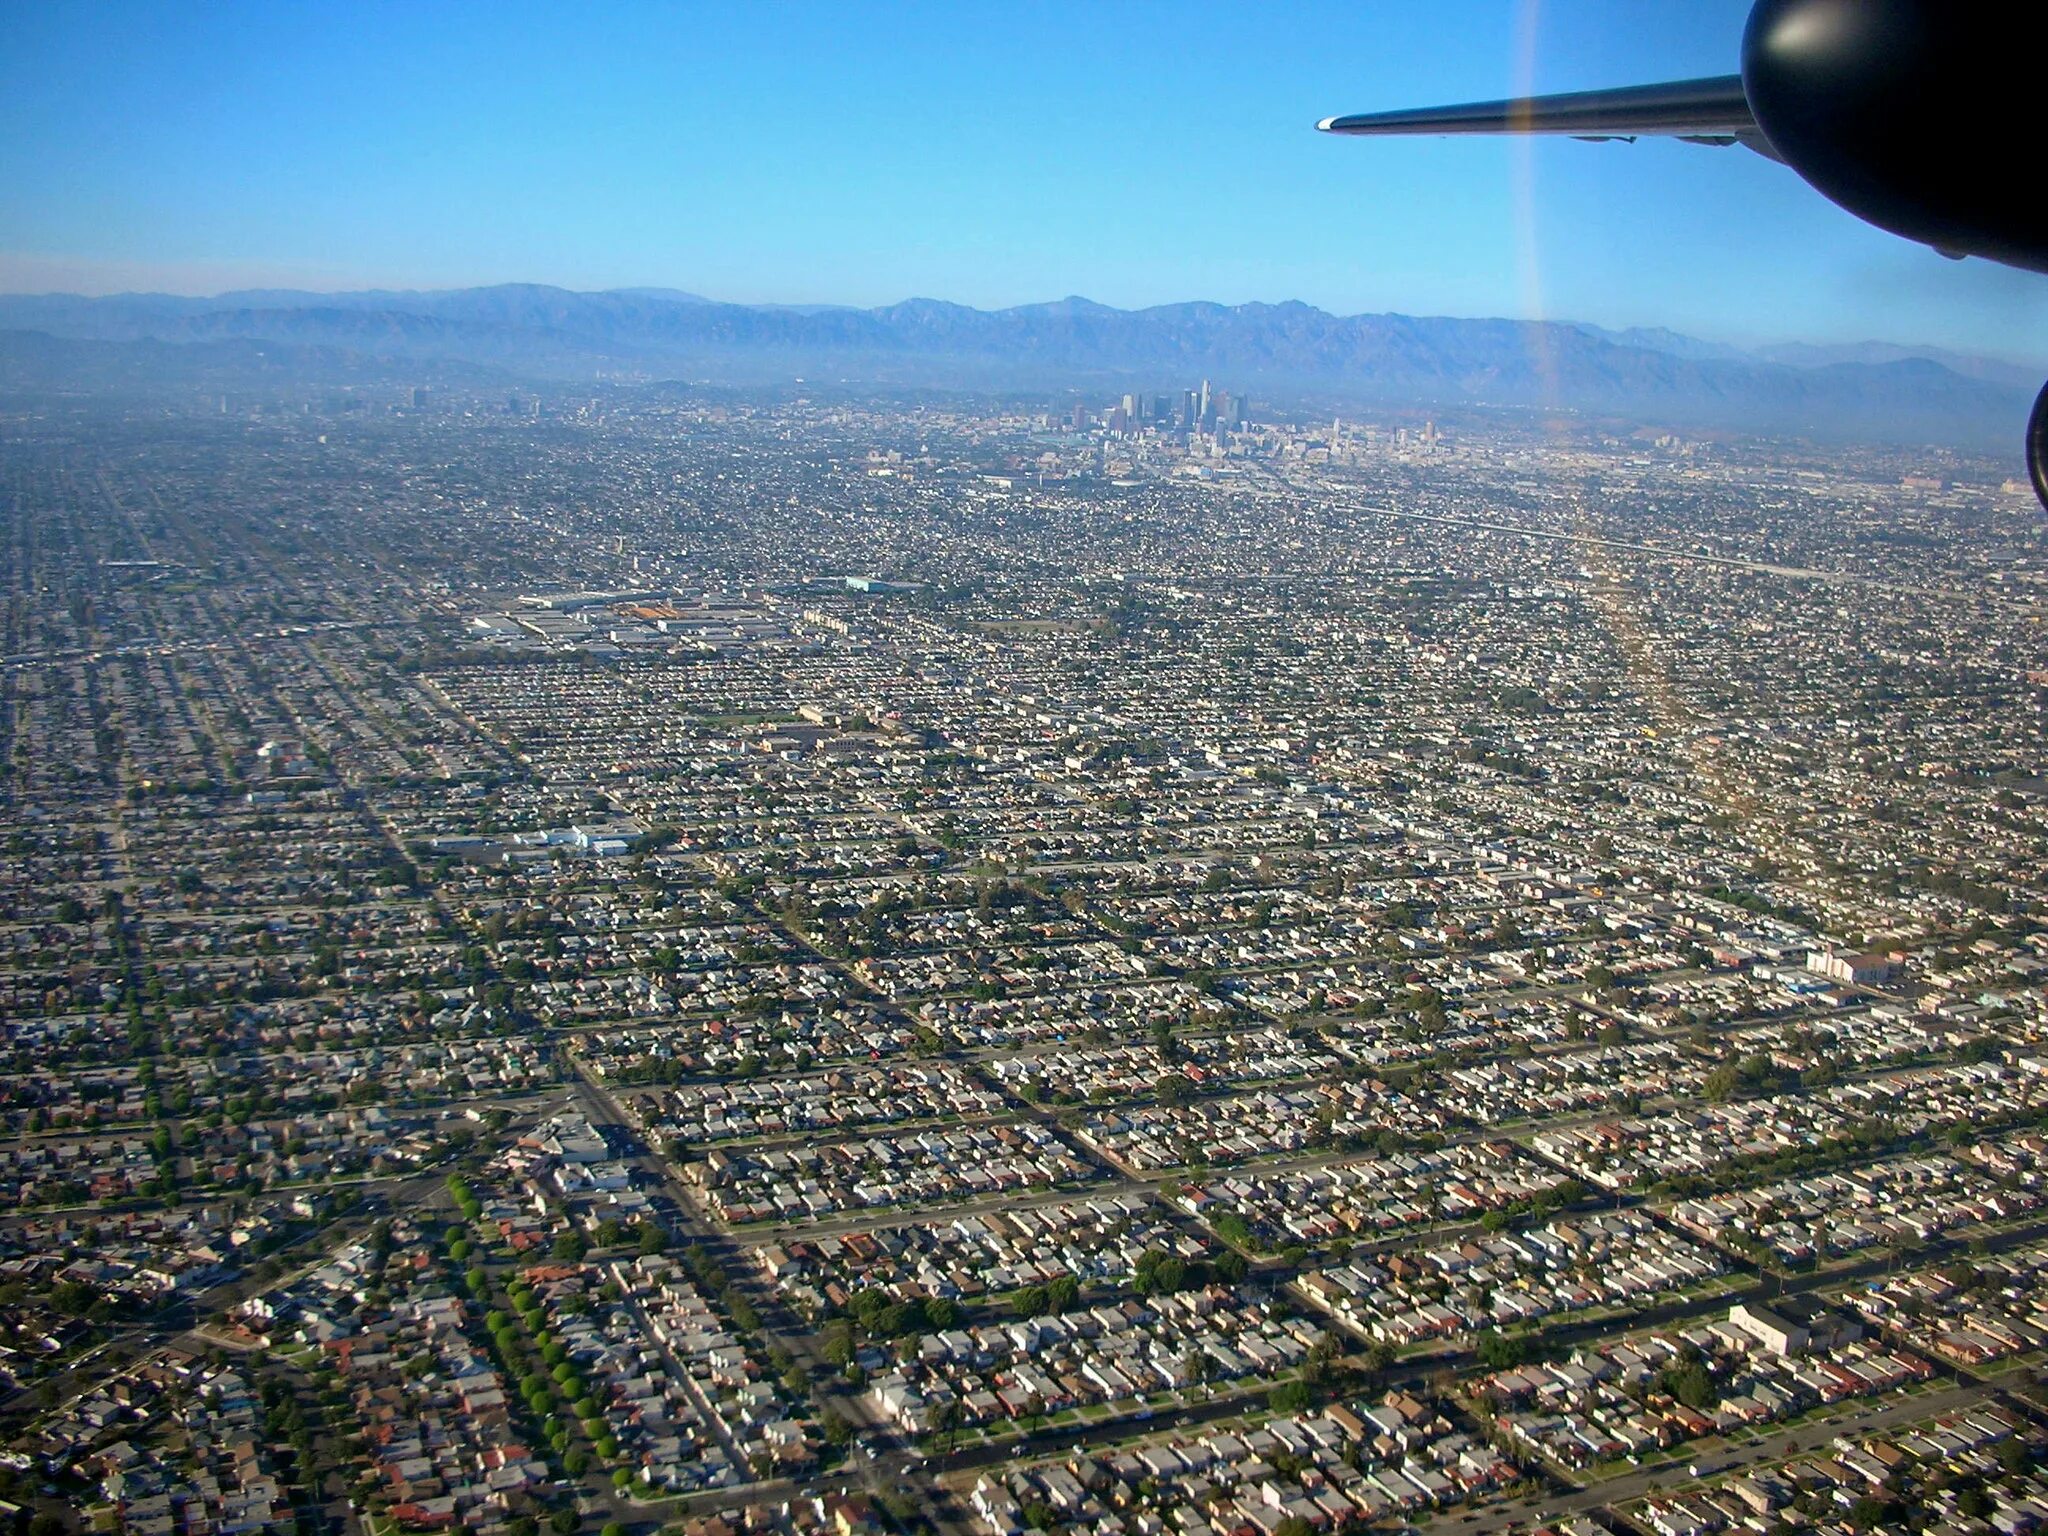 Включи лос анджелес 52 ngg. Субурбия Лос Анджелес. Агломерация Лос Анджелеса. Лос Анджелес с высоты птичьего полета. Лос Анджелес вид сверху.